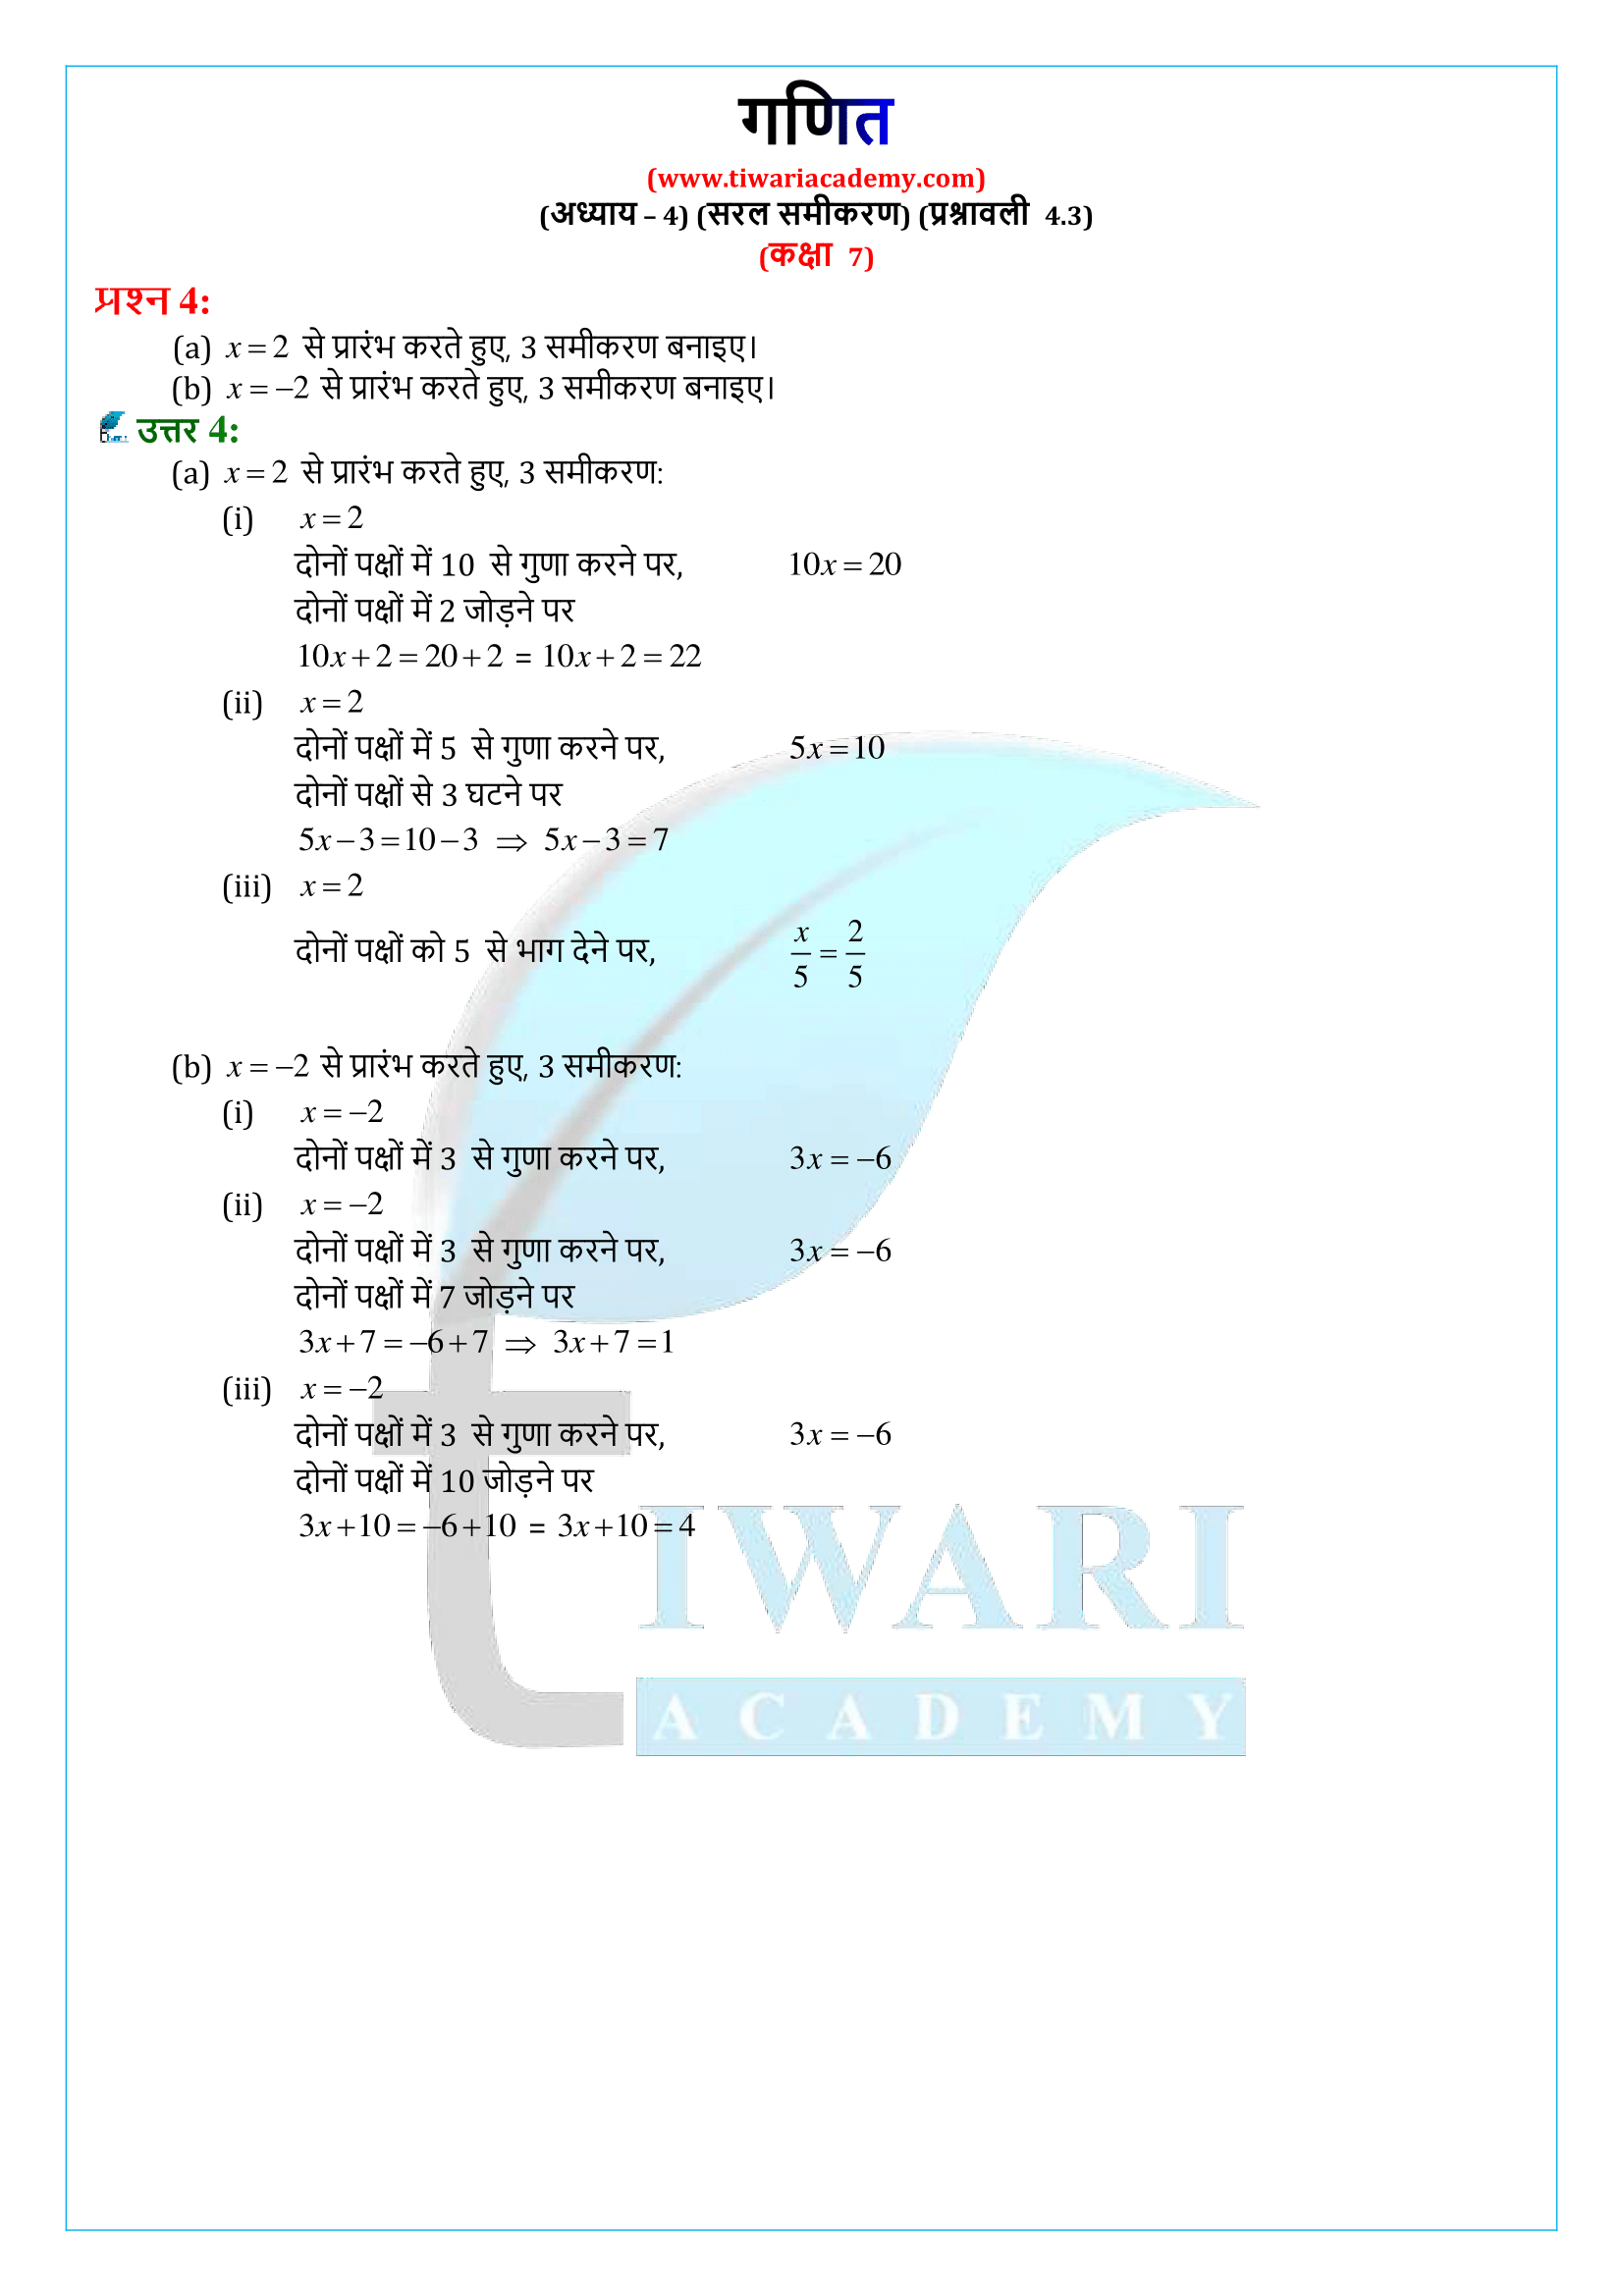 कक्षा 7 गणित प्रश्नावली 4.3